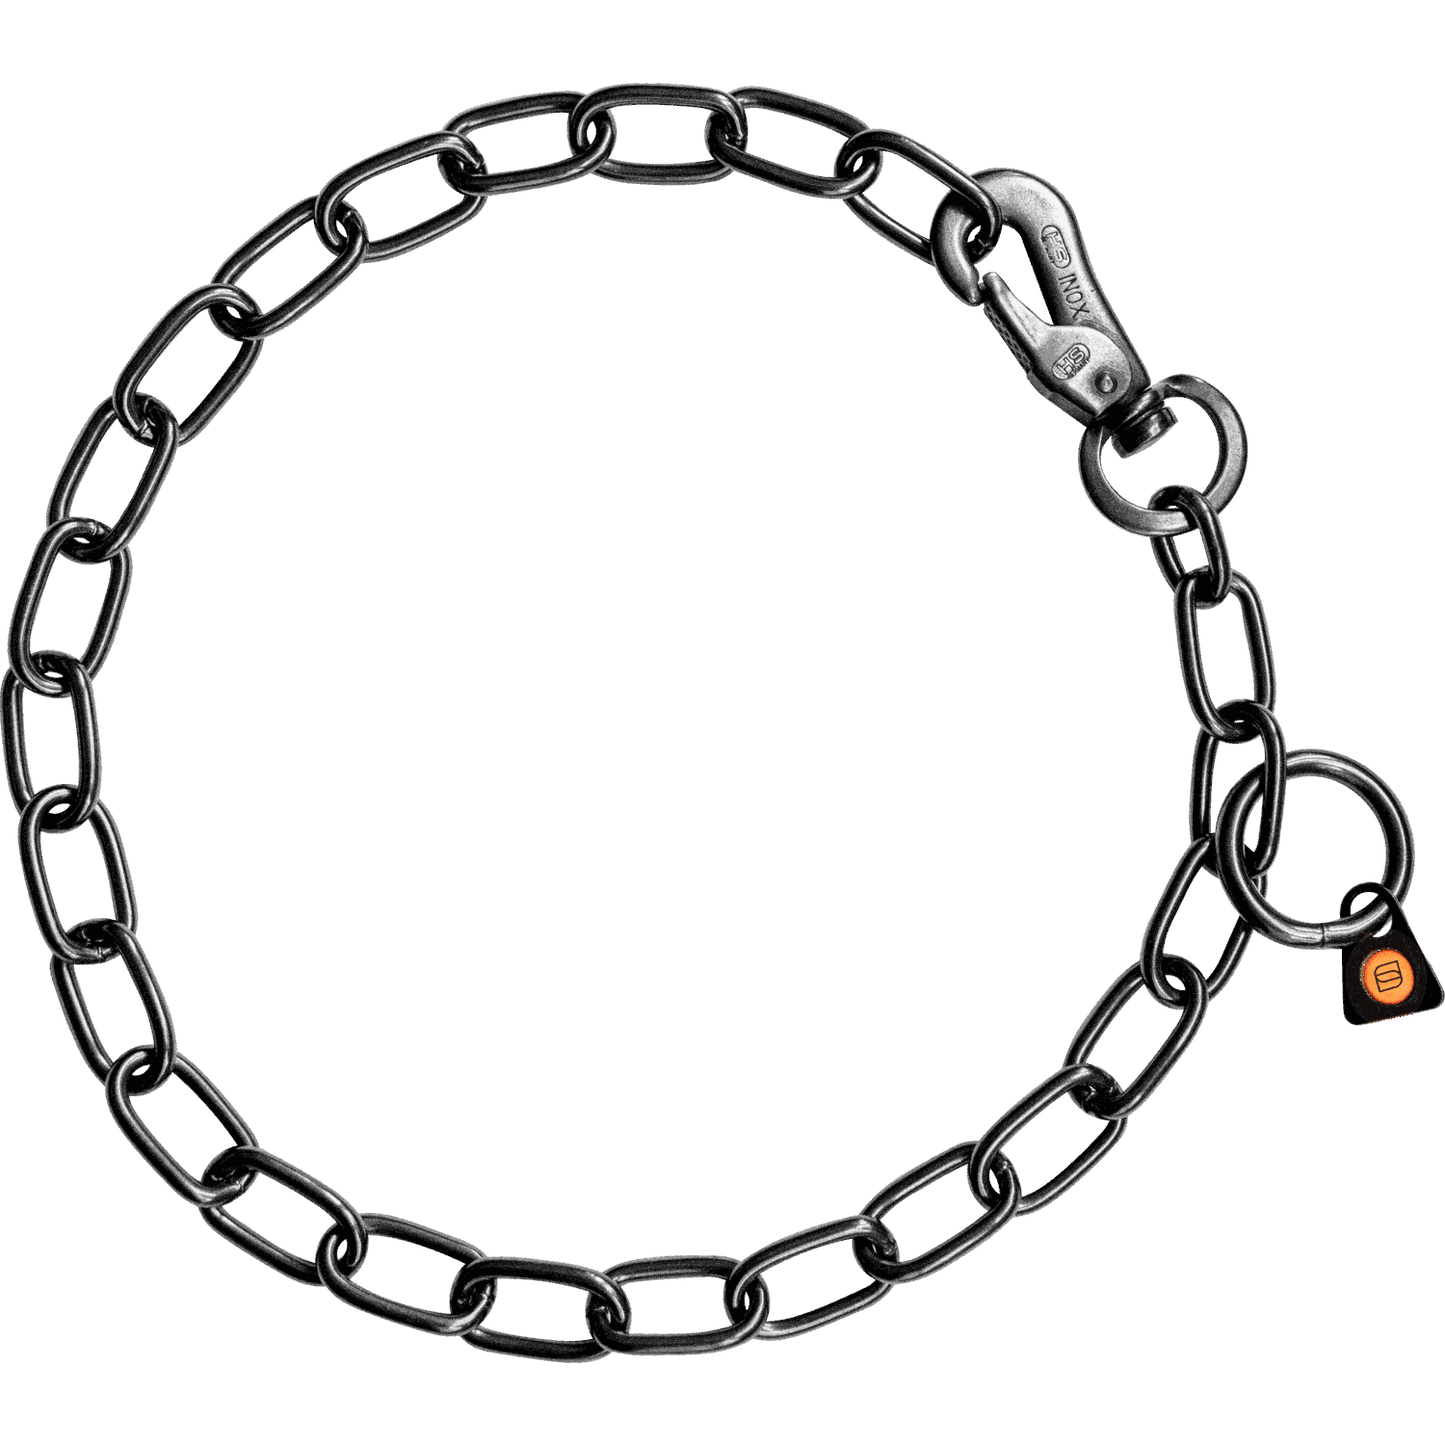 Herm Sprenger - Chain Collar with SPRENGER hook - Medium Links - Black Stainless Steel, 3mm